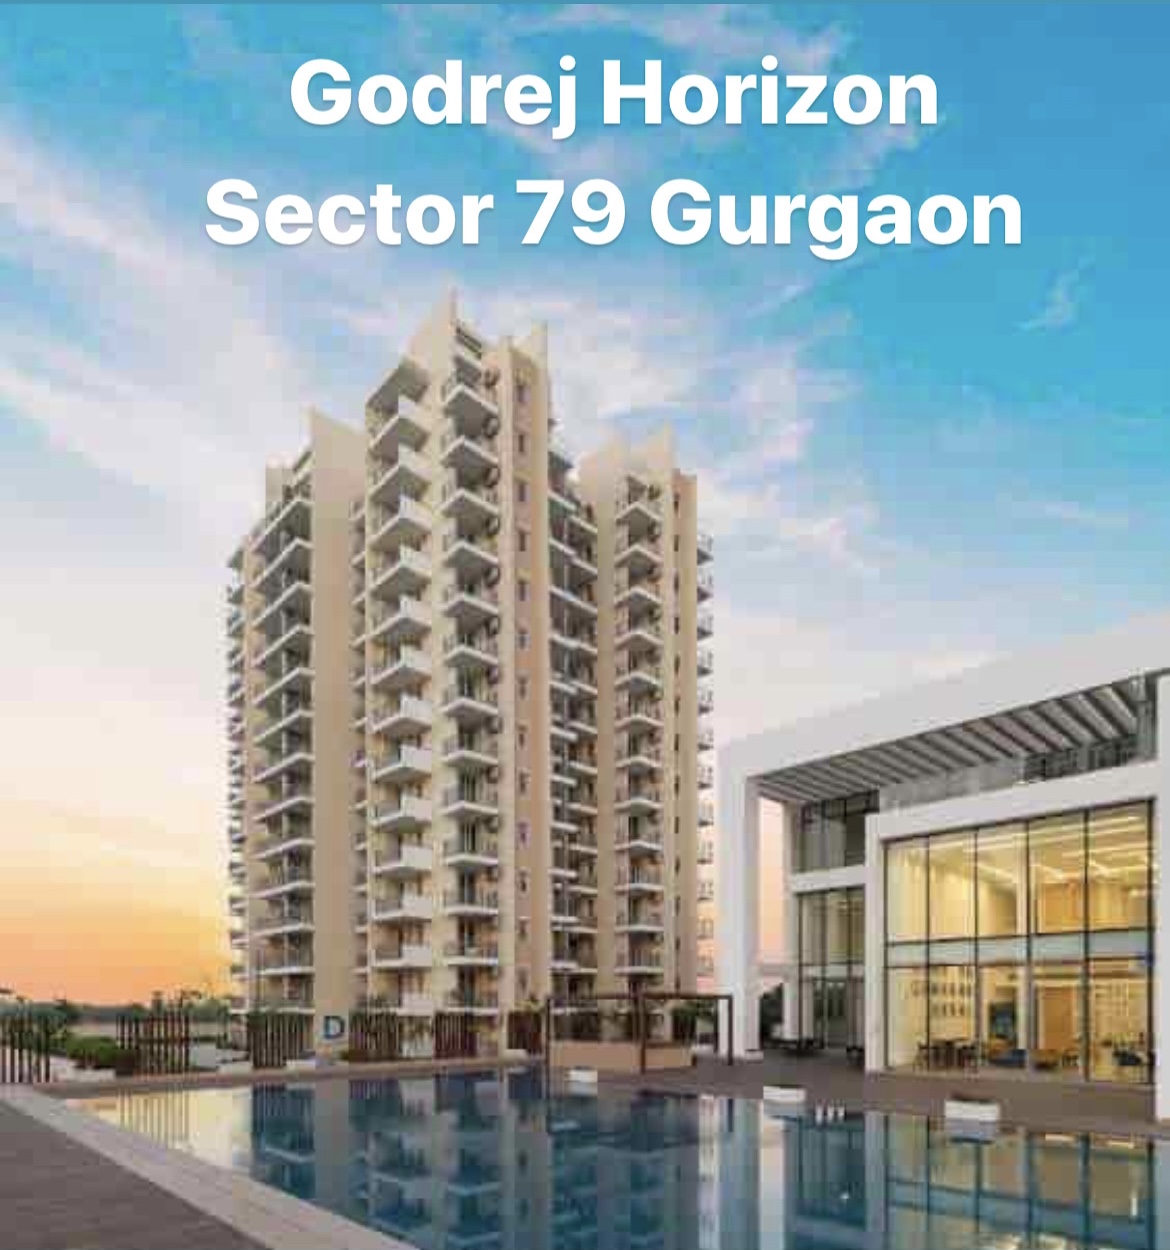 Godrej Horizon Sector 79 Gurgaon